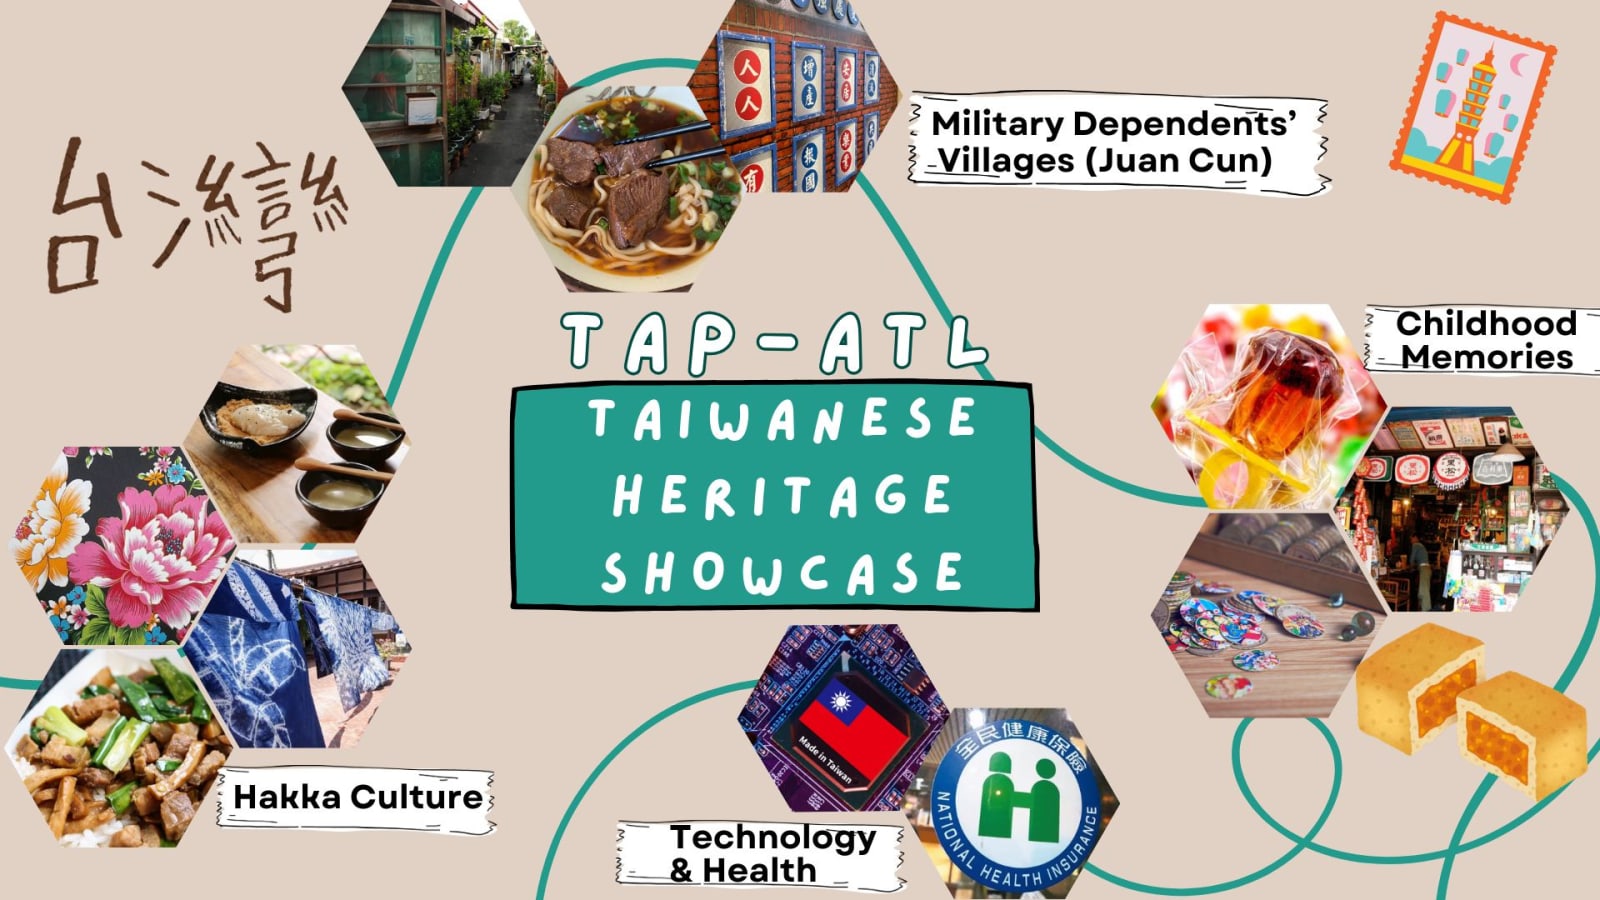 Taiwanese Heritage Showcase